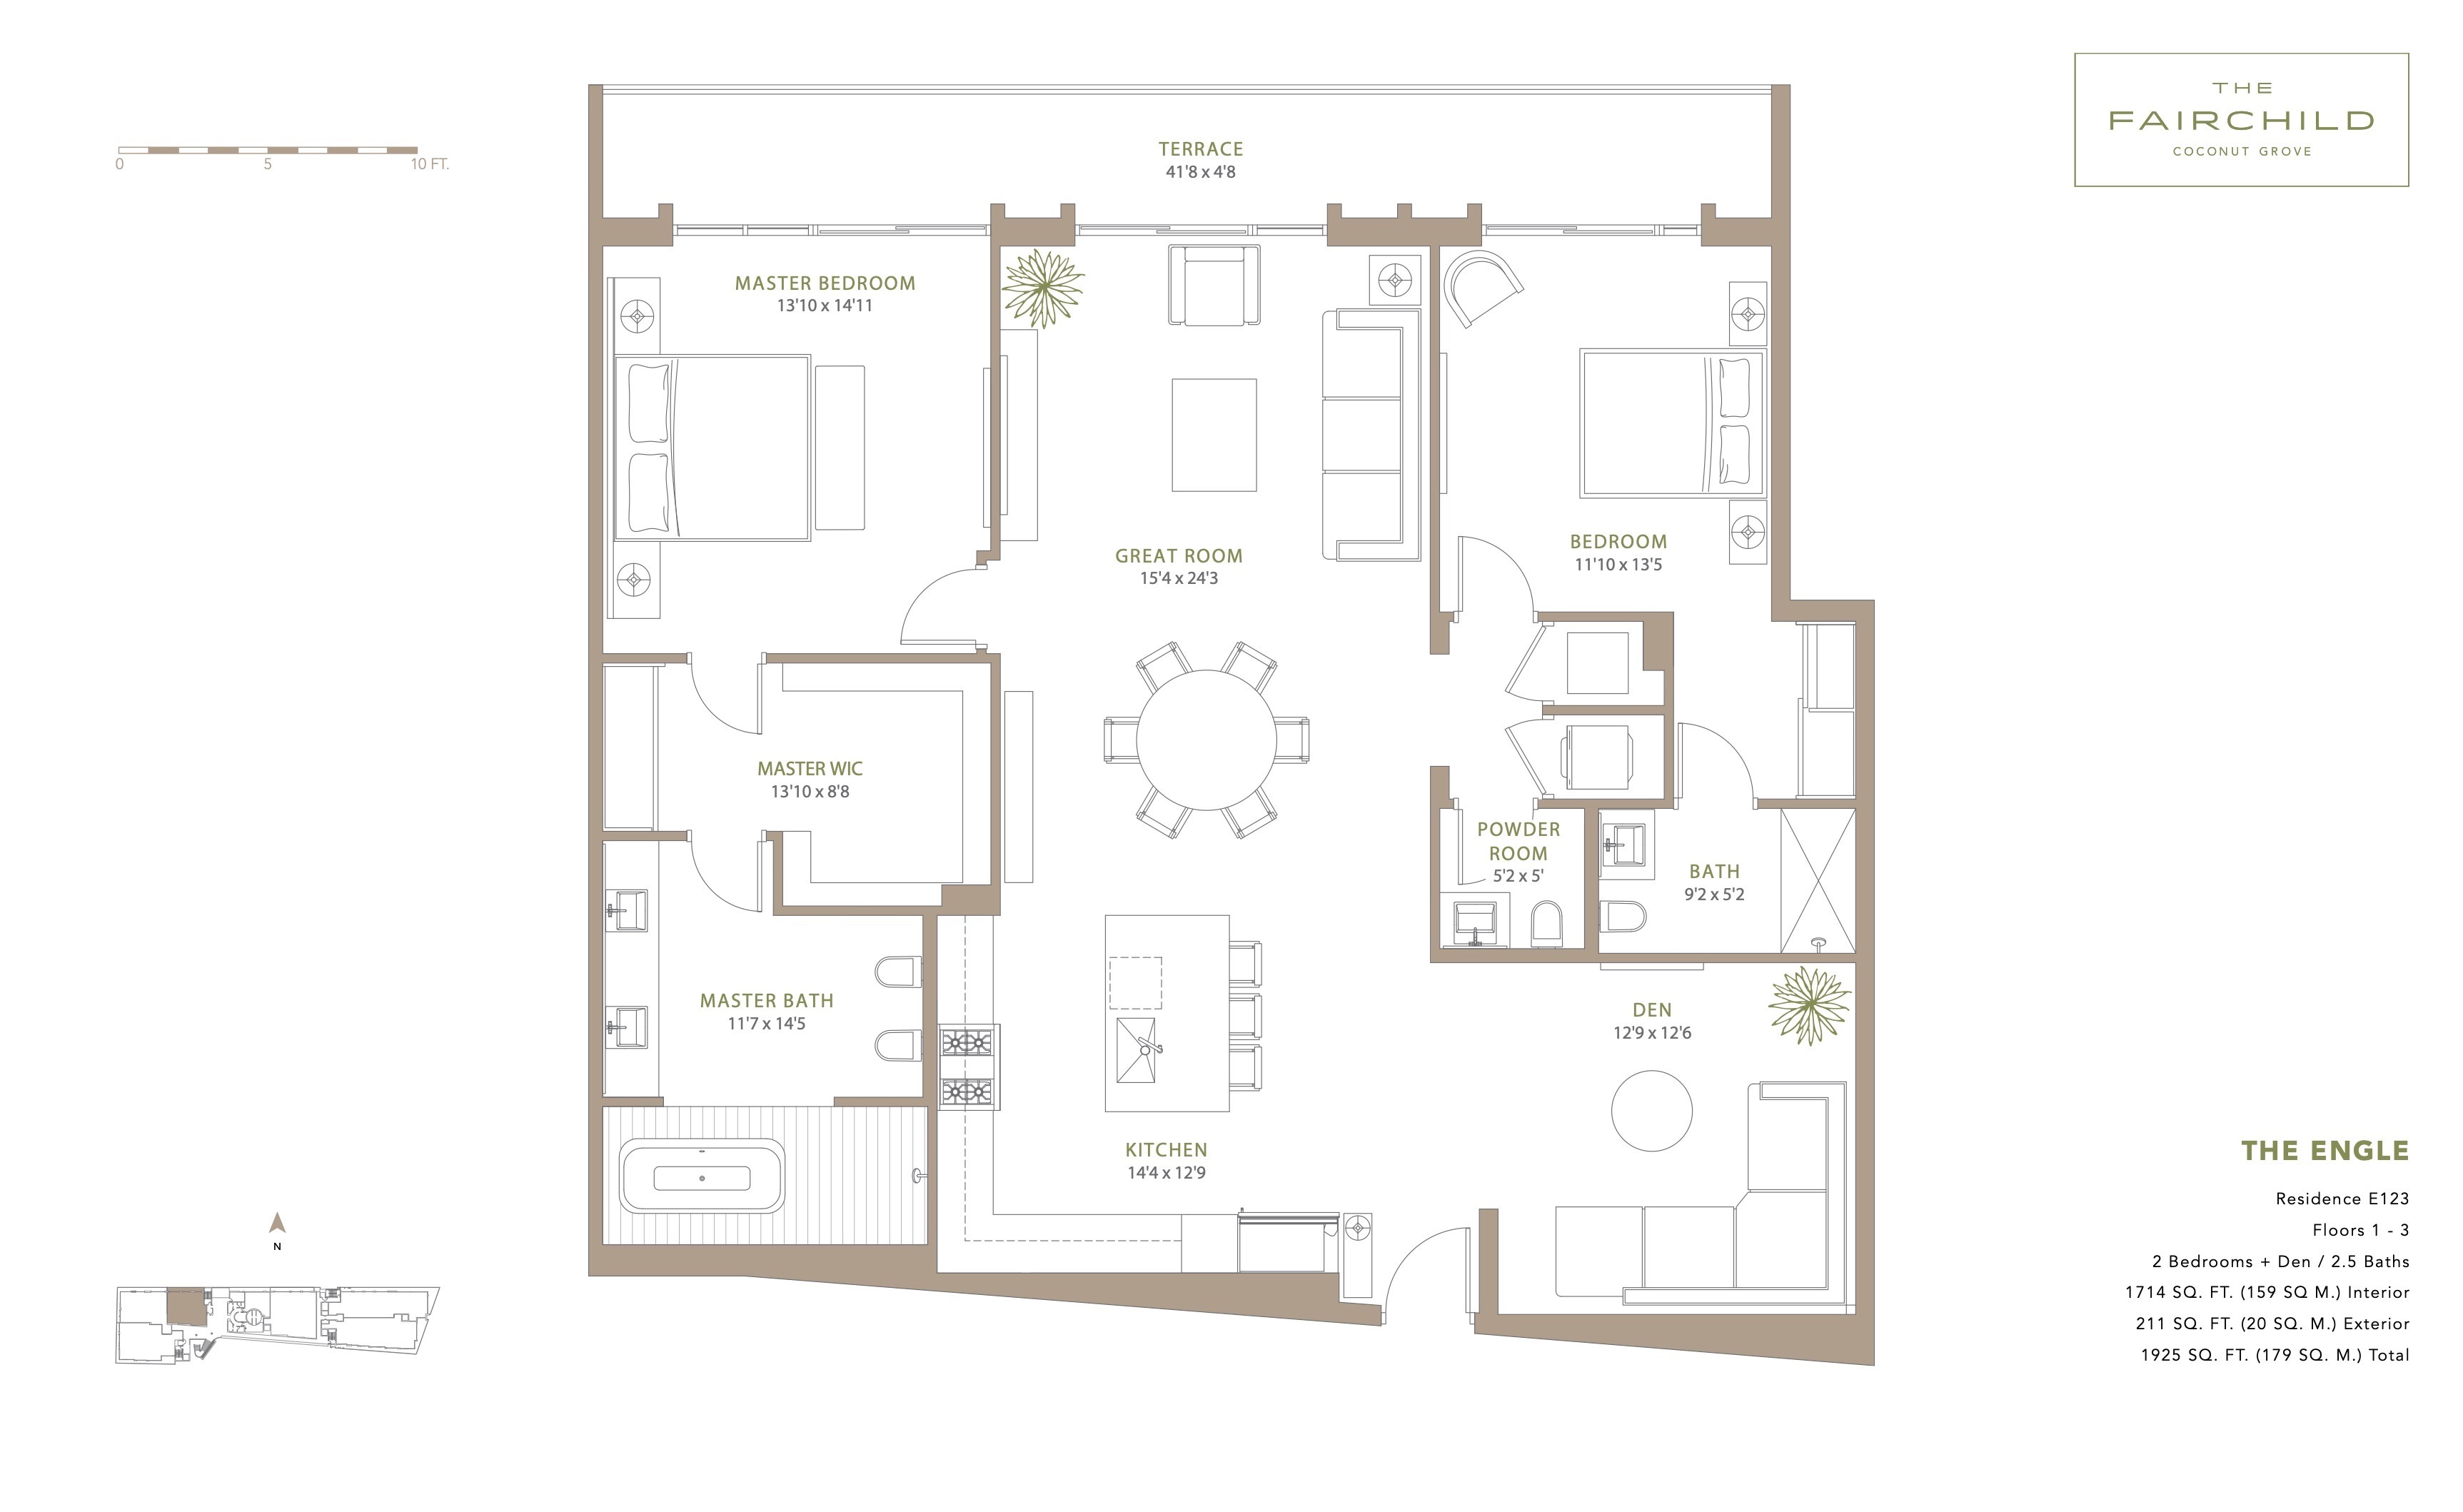 Floor Plan for The Fairchild Coconut Grove Floorplans, The Engle